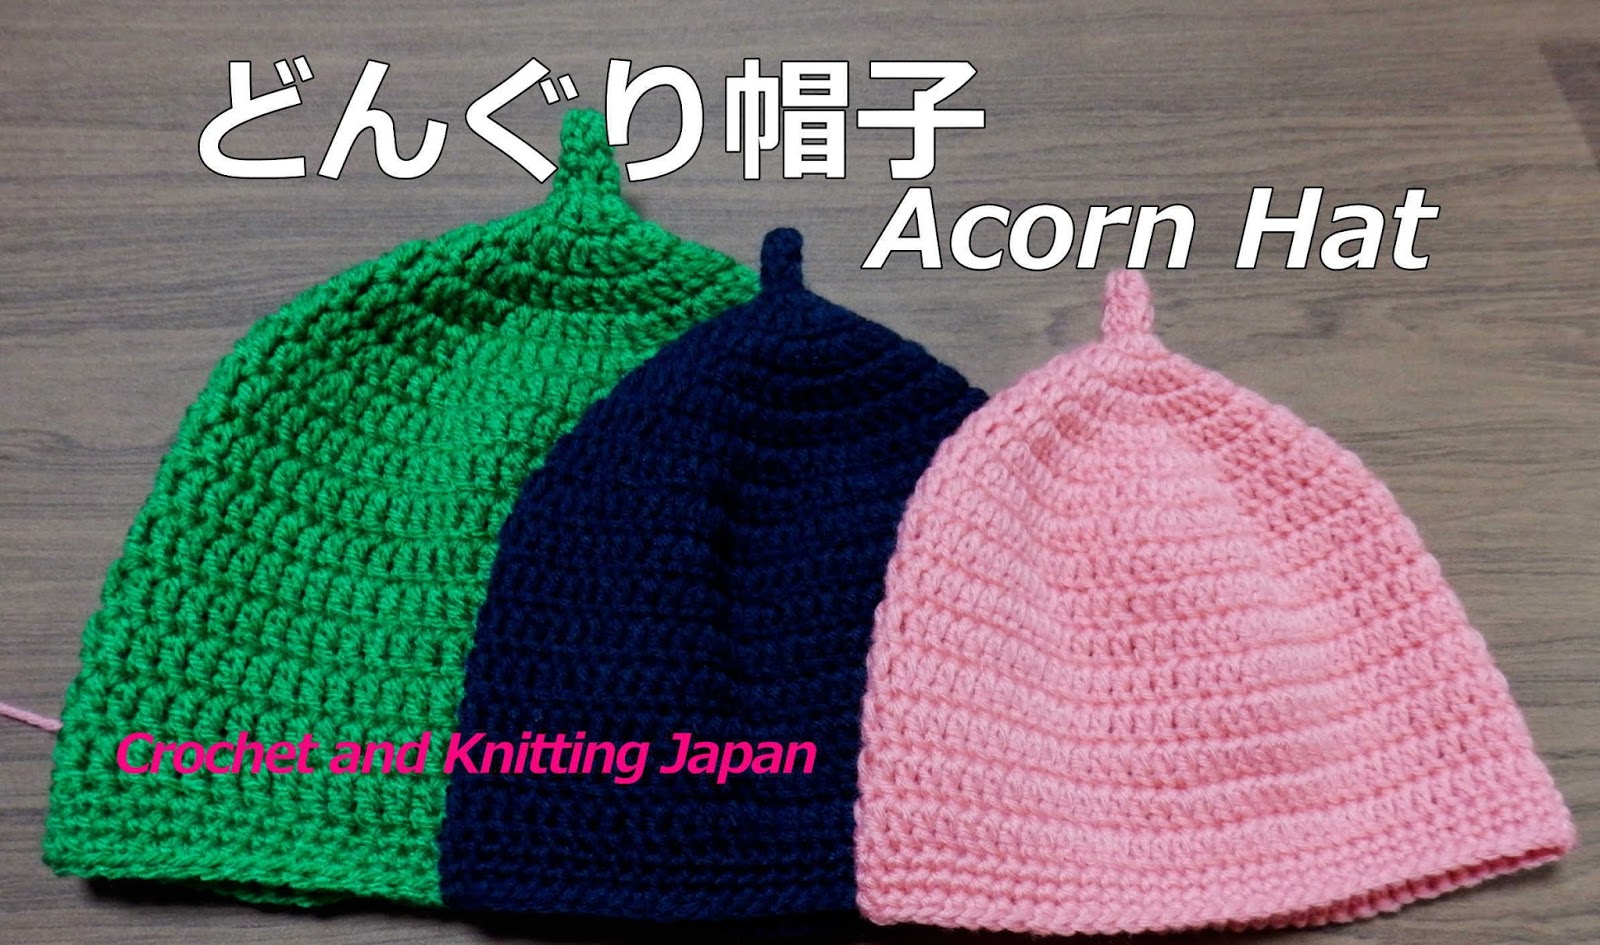 かぎ編み Crochet Japan クロッシェジャパン ニット帽子の編み方